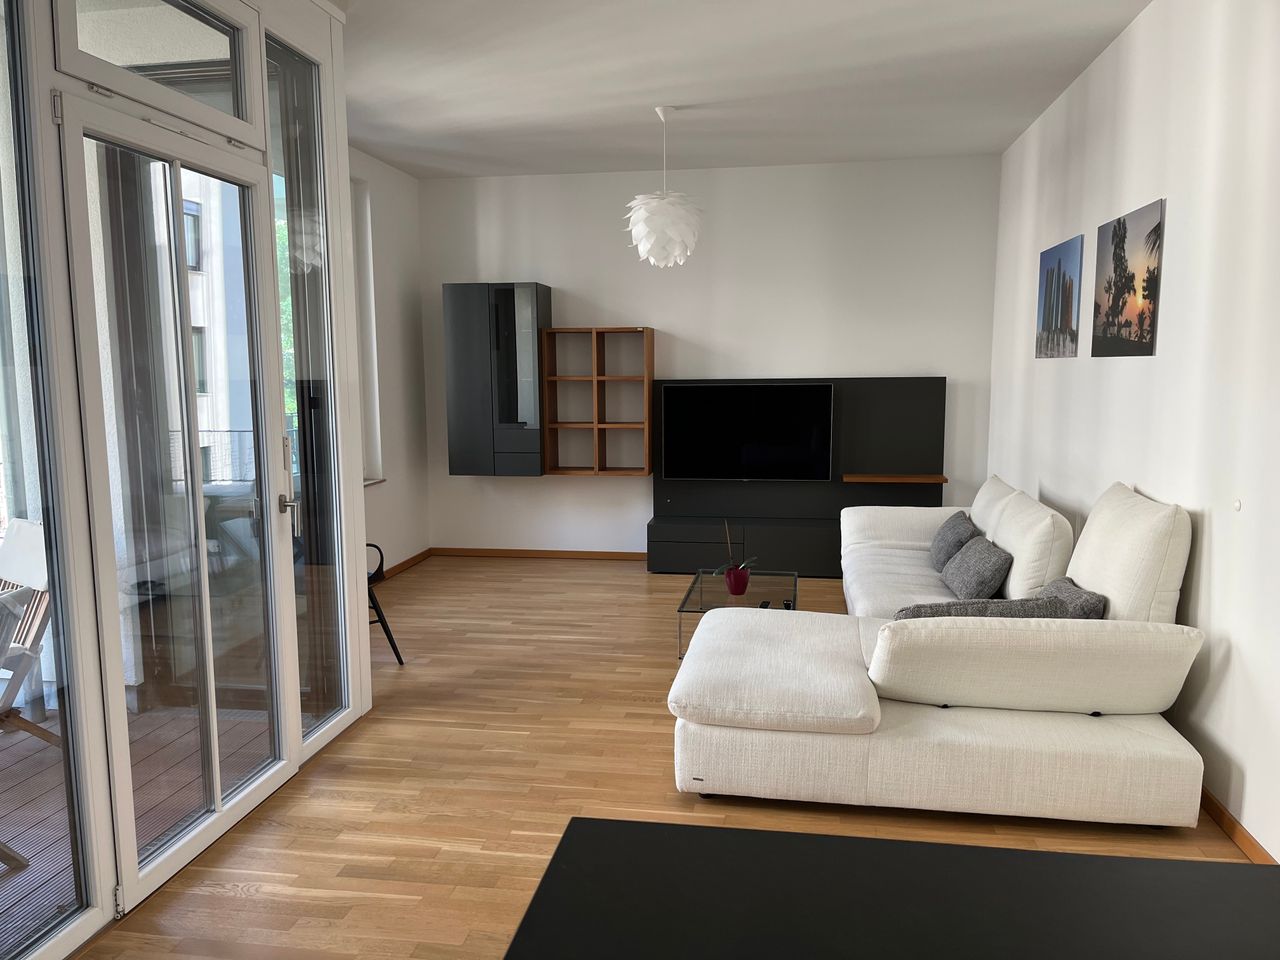 Beautiful new flat between Kreuzberg, Mitte and Tiergarten